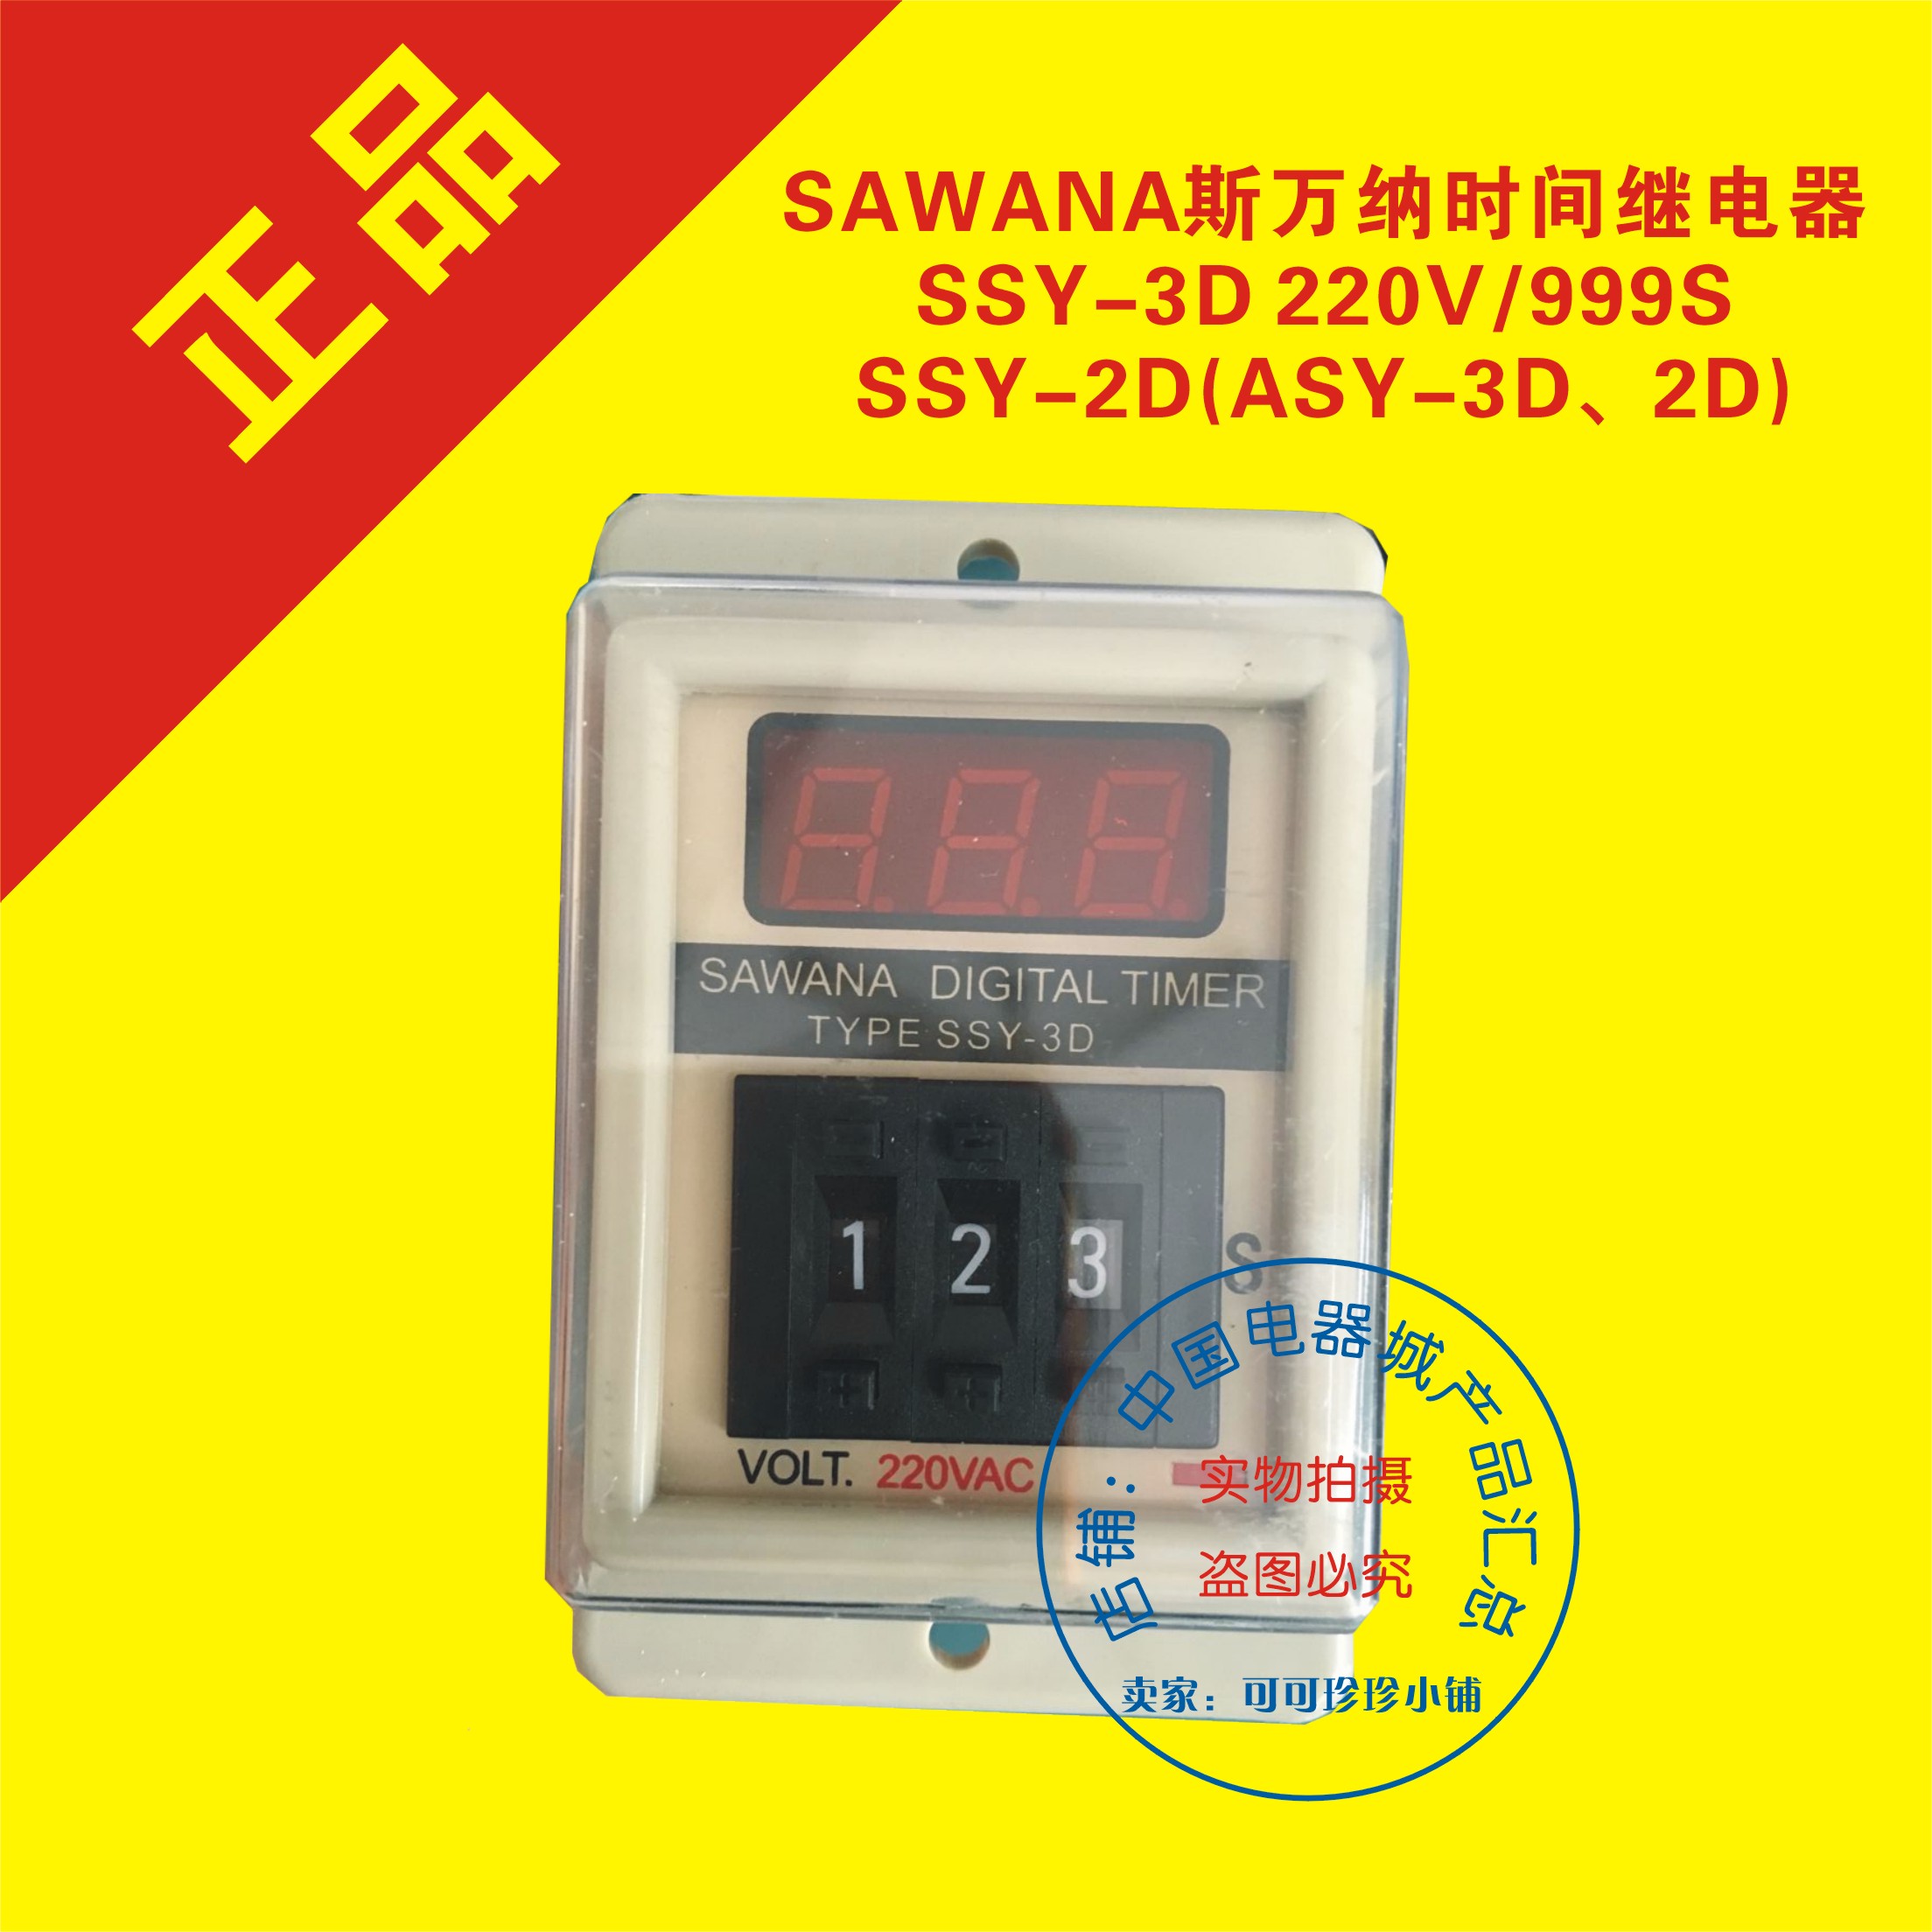 SAWANA斯万纳时间继电器SSY-3D 220V/999S、SSY-2D(ASY-3D、2D)